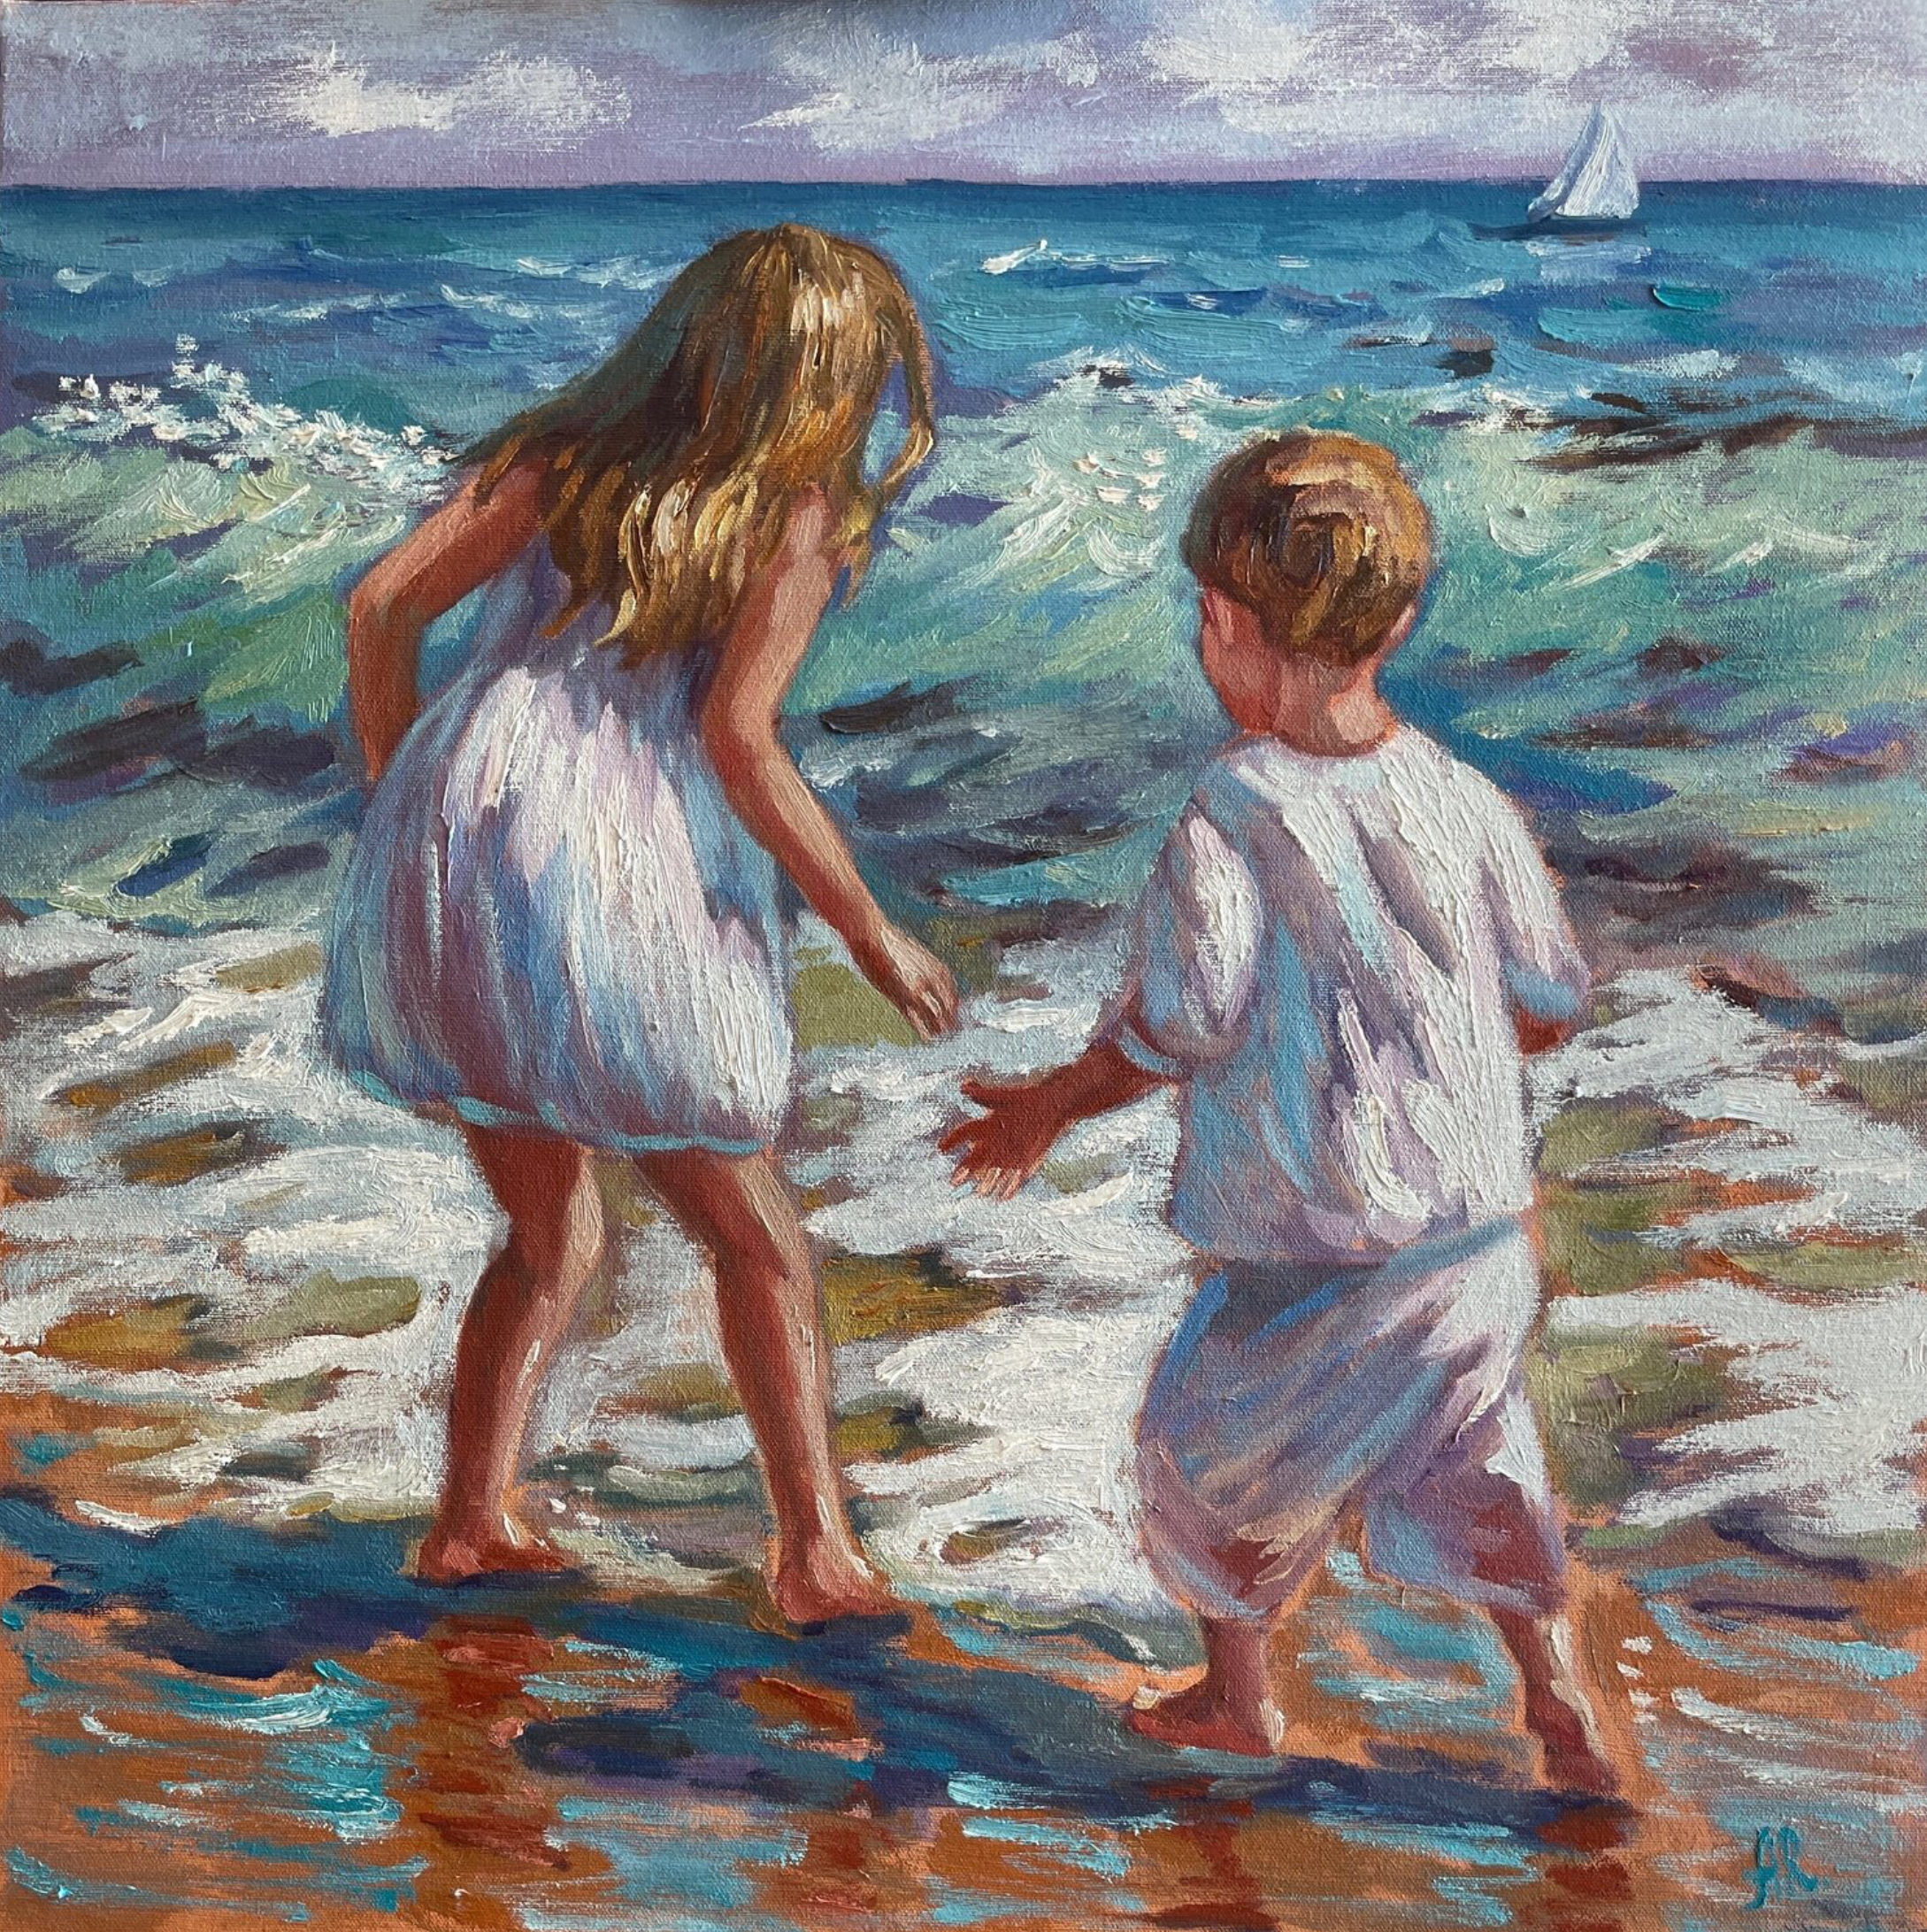 安娜-雷兹尼科娃的 "追逐海浪 "画作展示了孩子们在海边玩耍。颜色主要是绿松石色，蓝色。